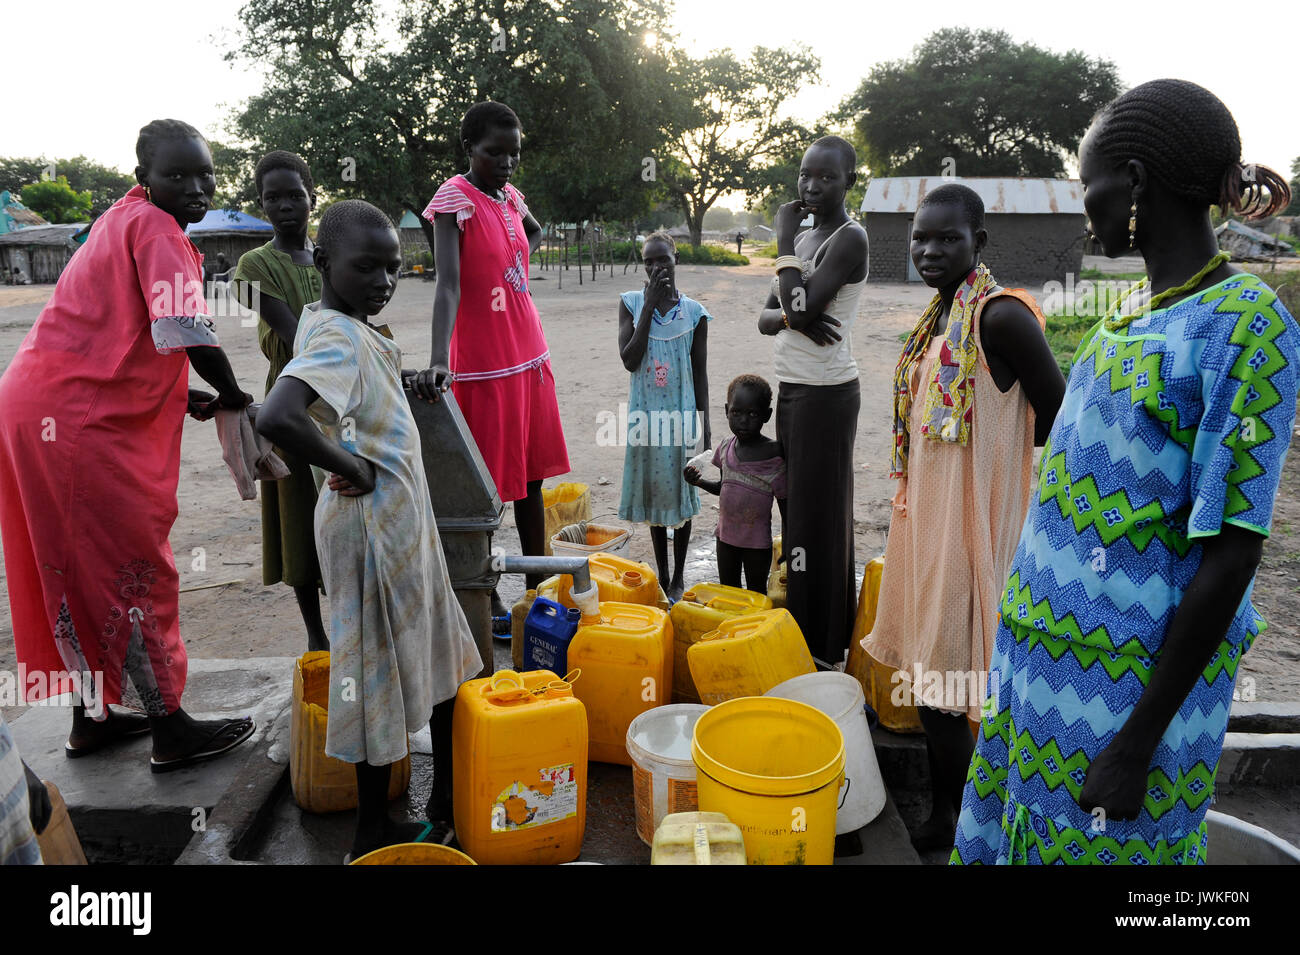 Süd-SUDAN, Rumbek, Wasserversorgung, die Frauen holen das Wasser aus der Pumpe set/SÜD-SUDAN, Rumbek, Wasserversorgung, Frauen holen Wasser von einem Brunnen Stockfoto